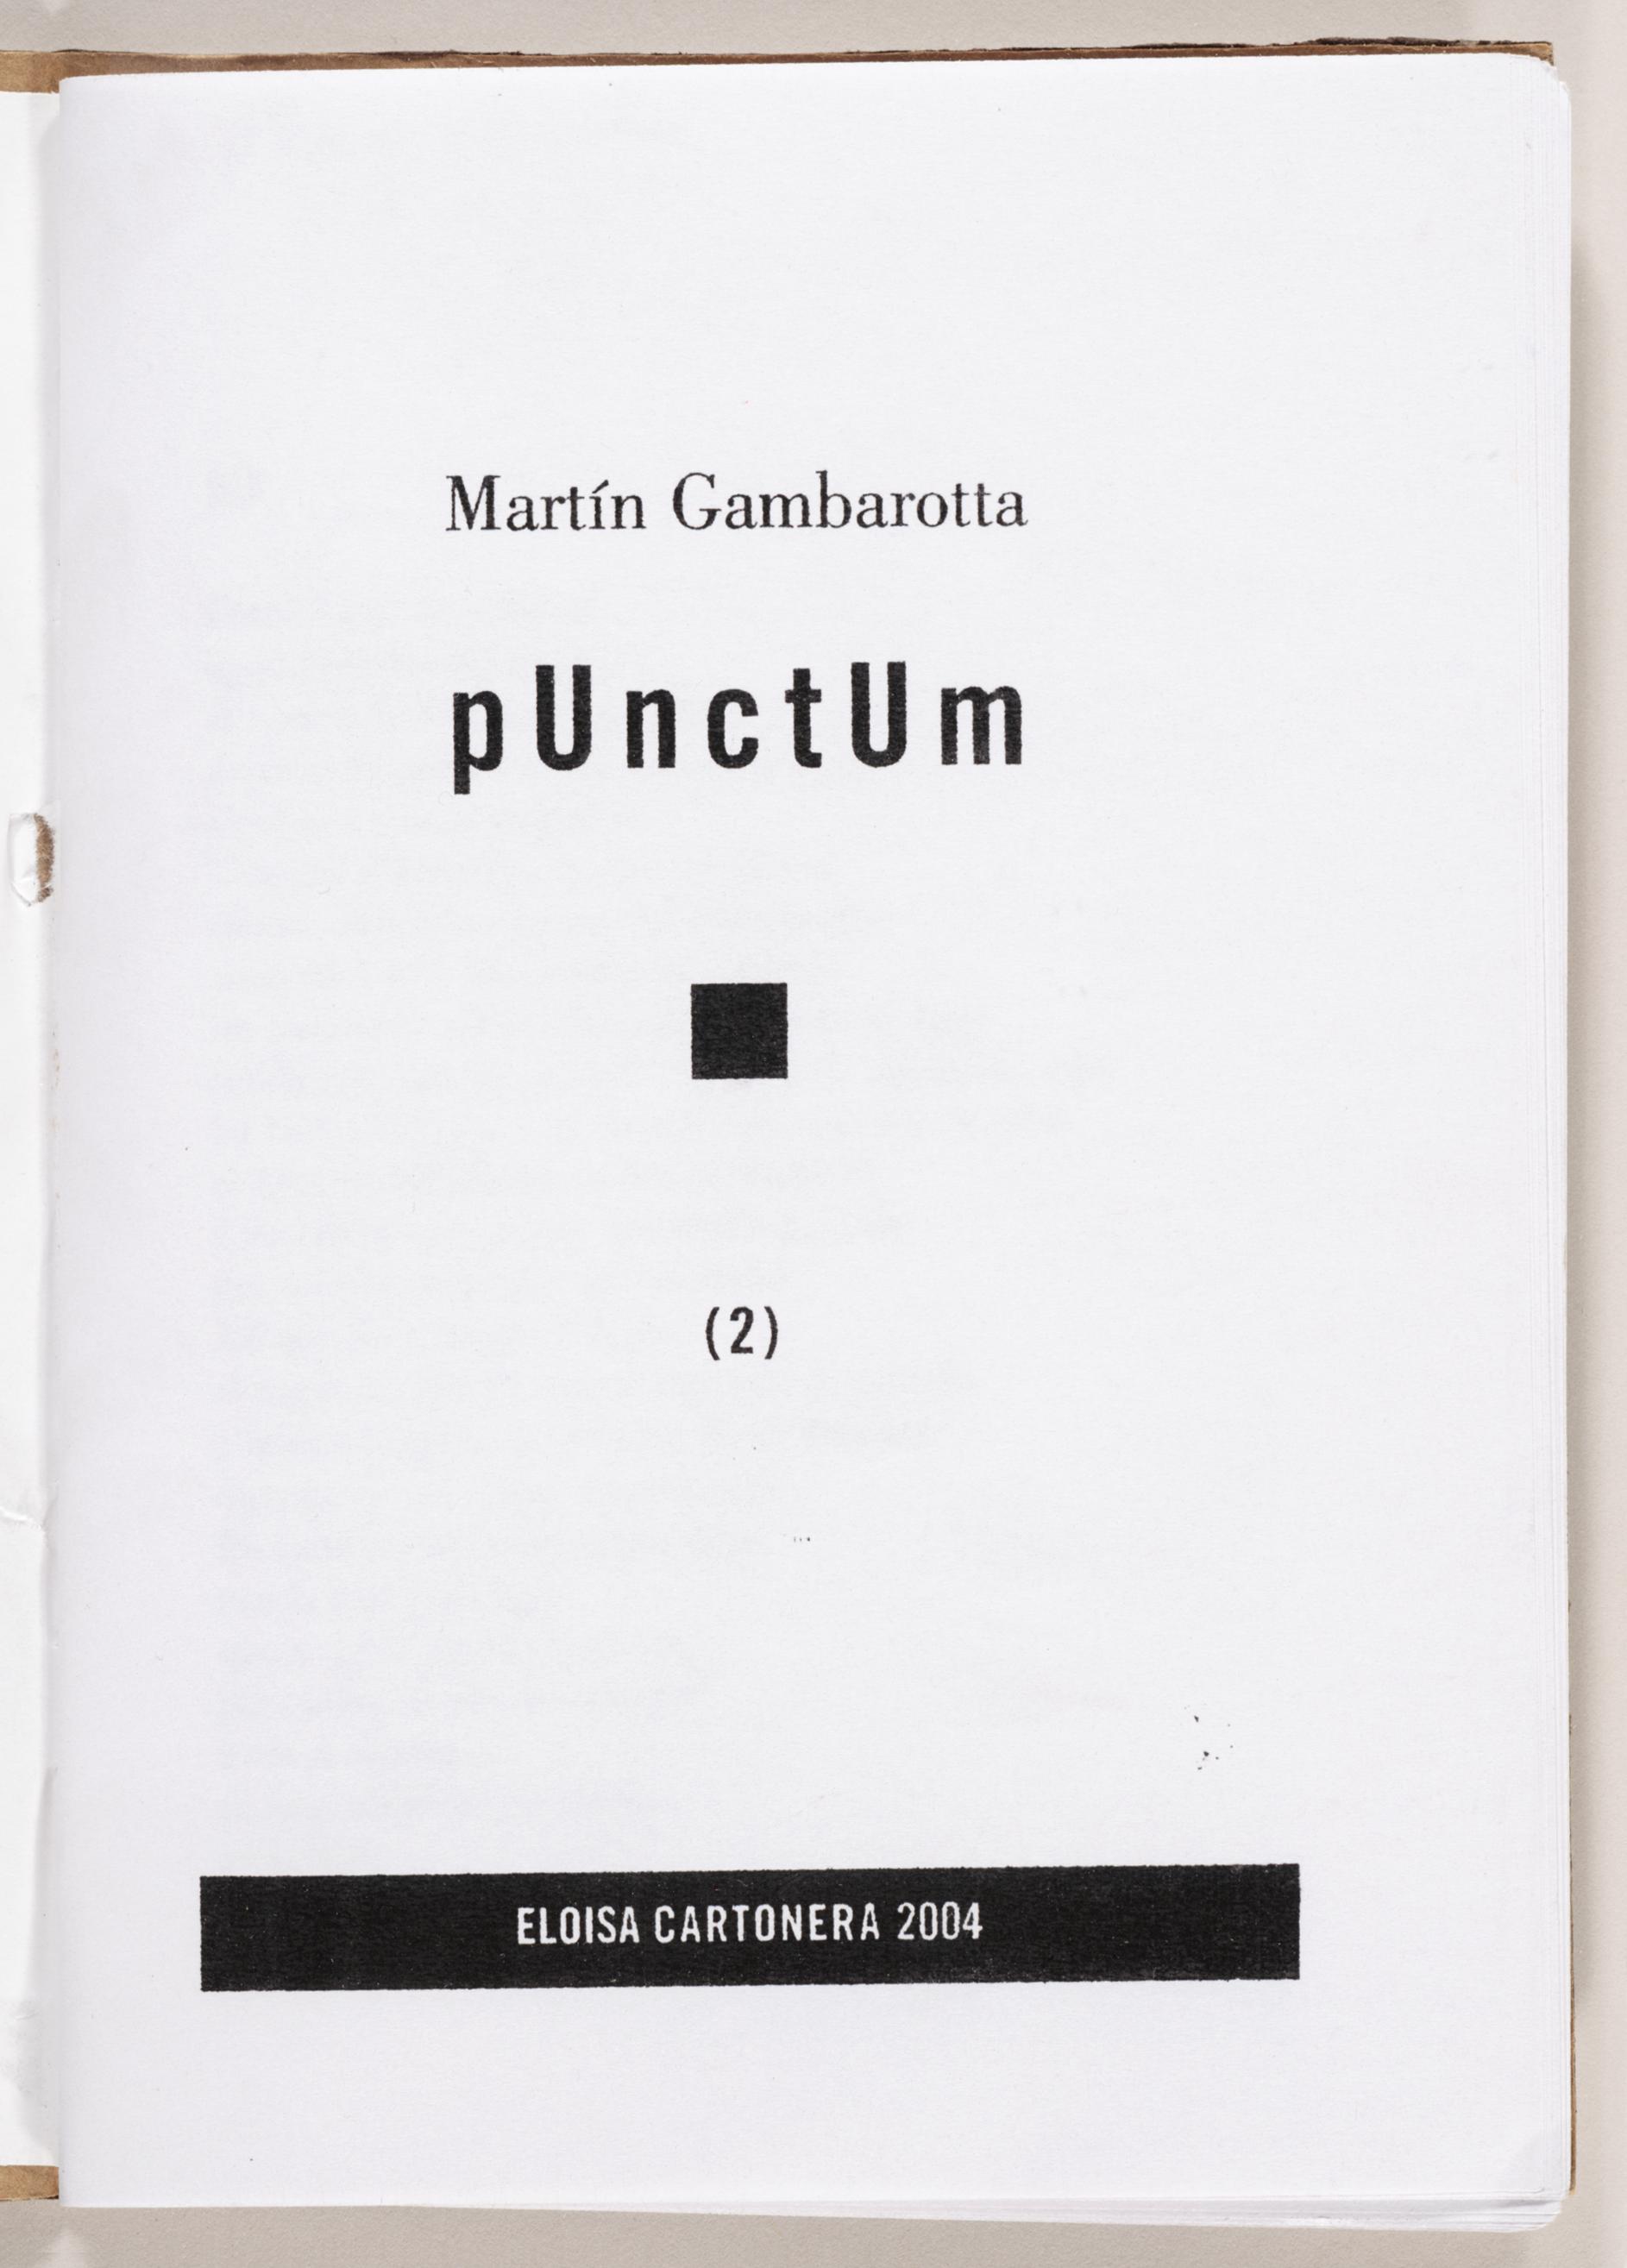 sound/music – punctum books